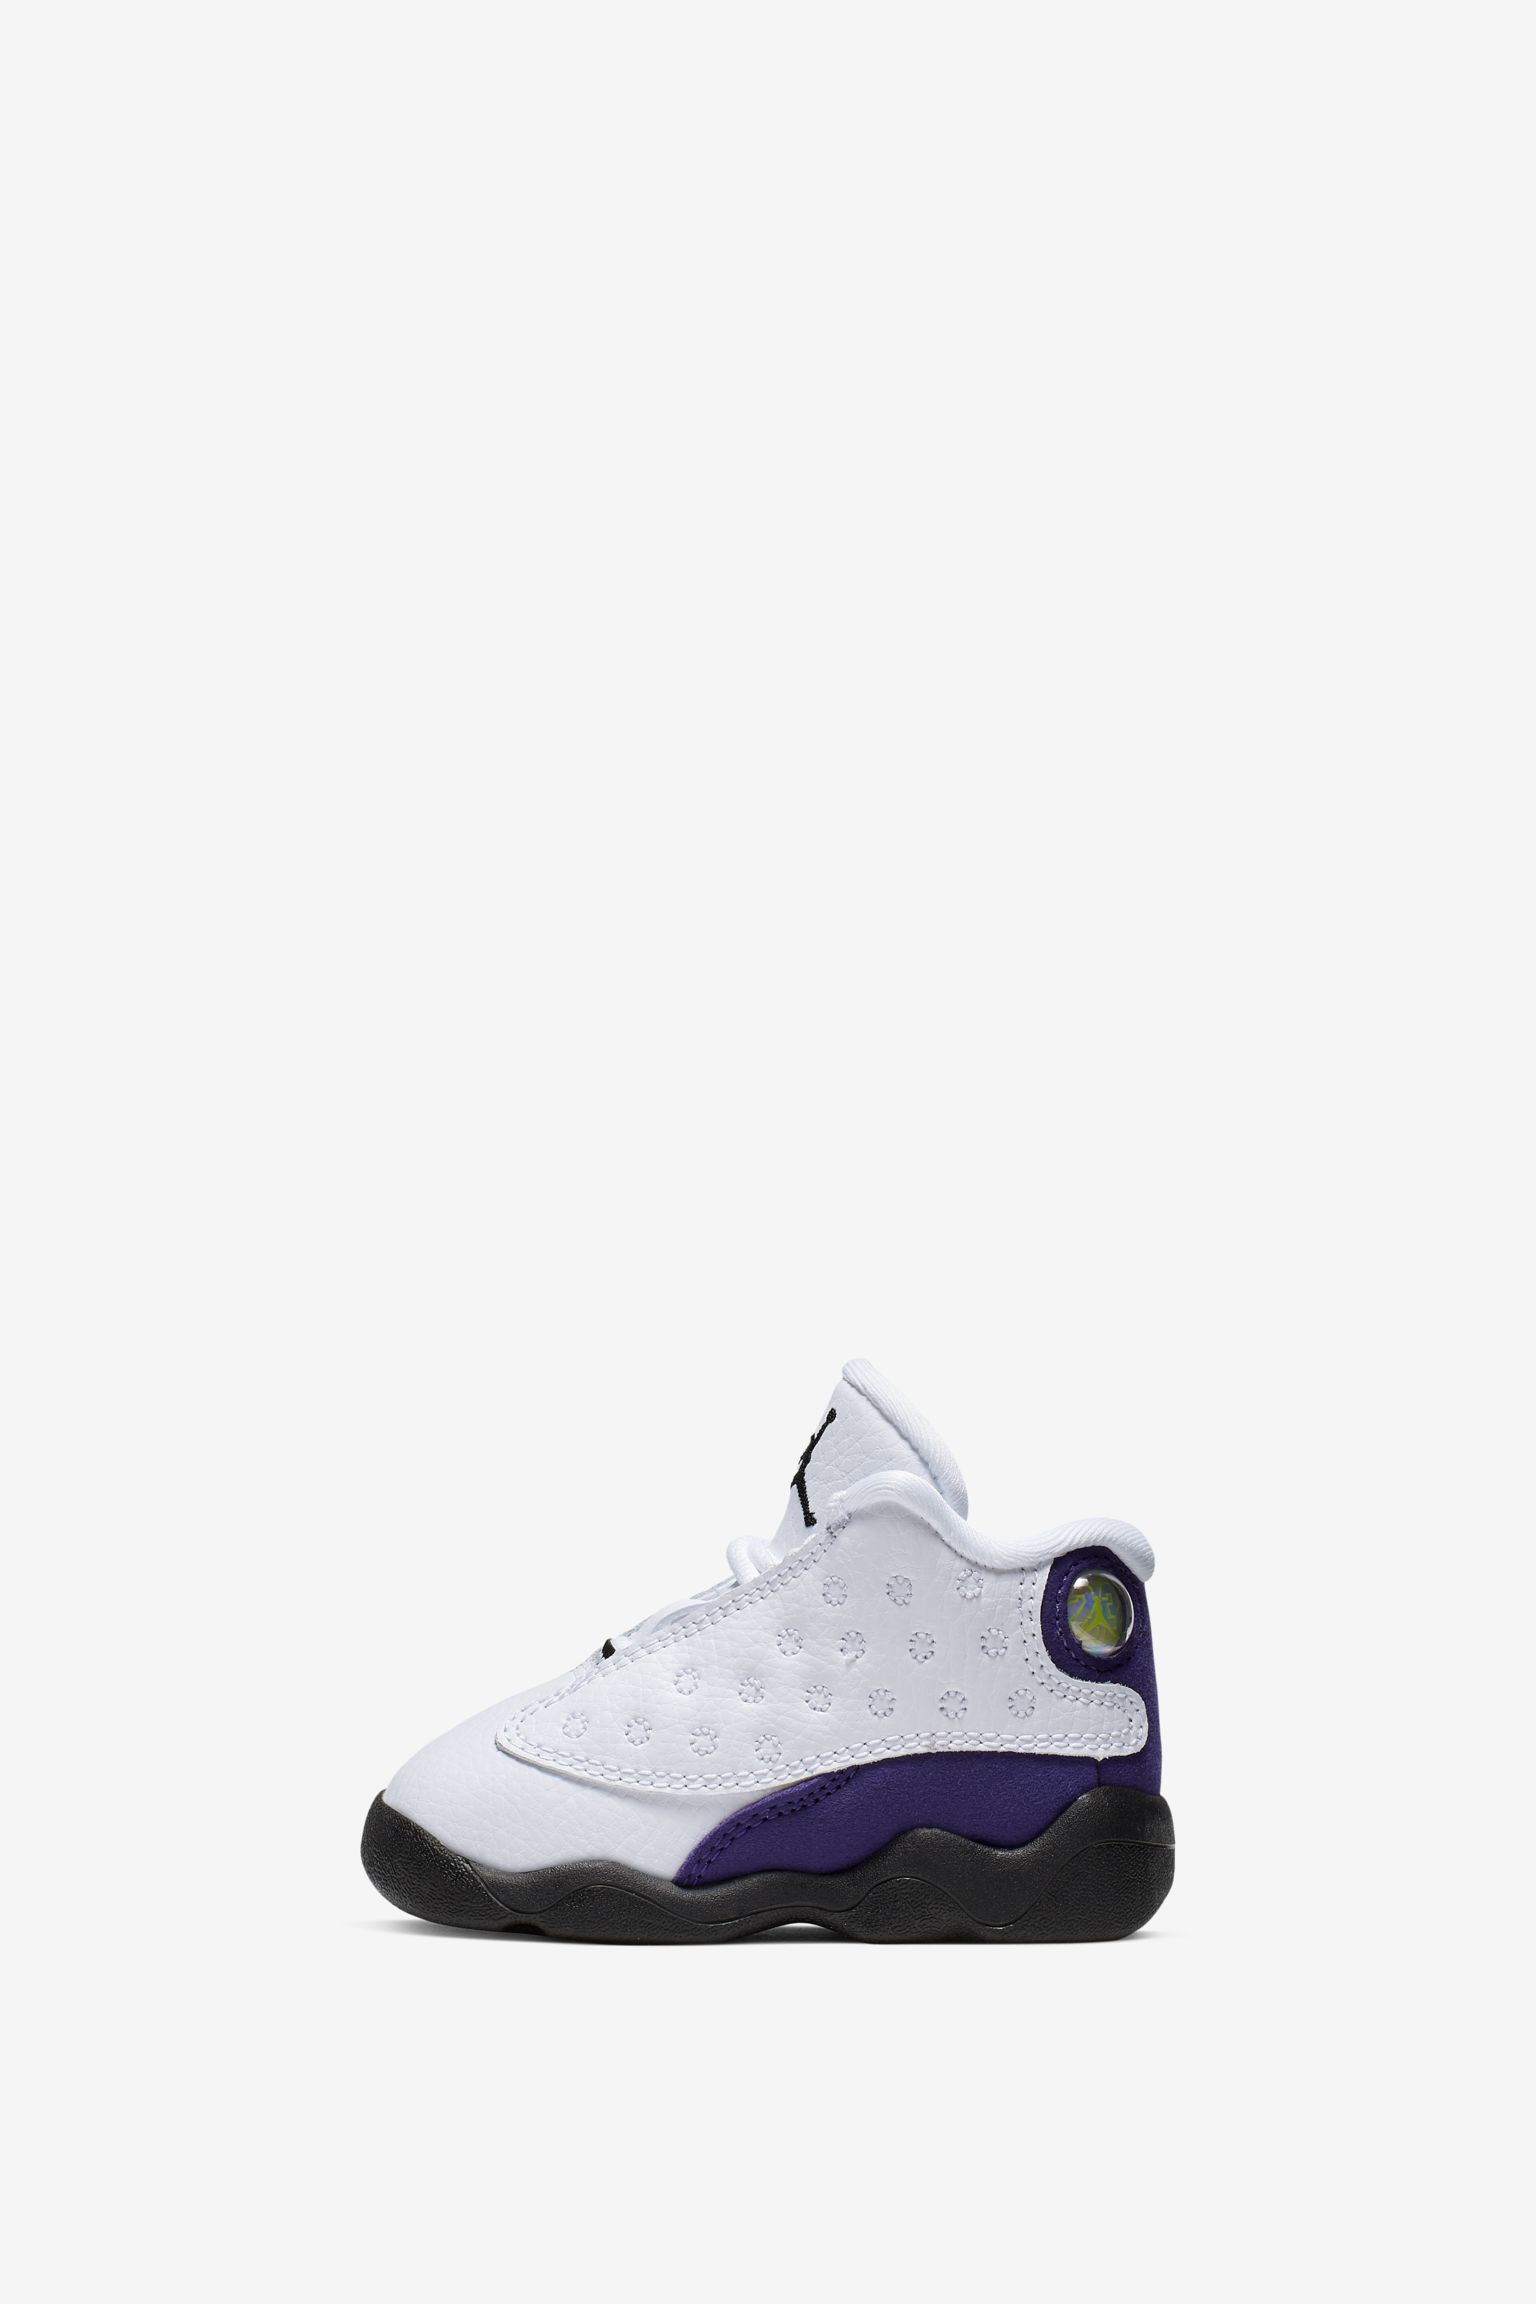 purple white jordans 13